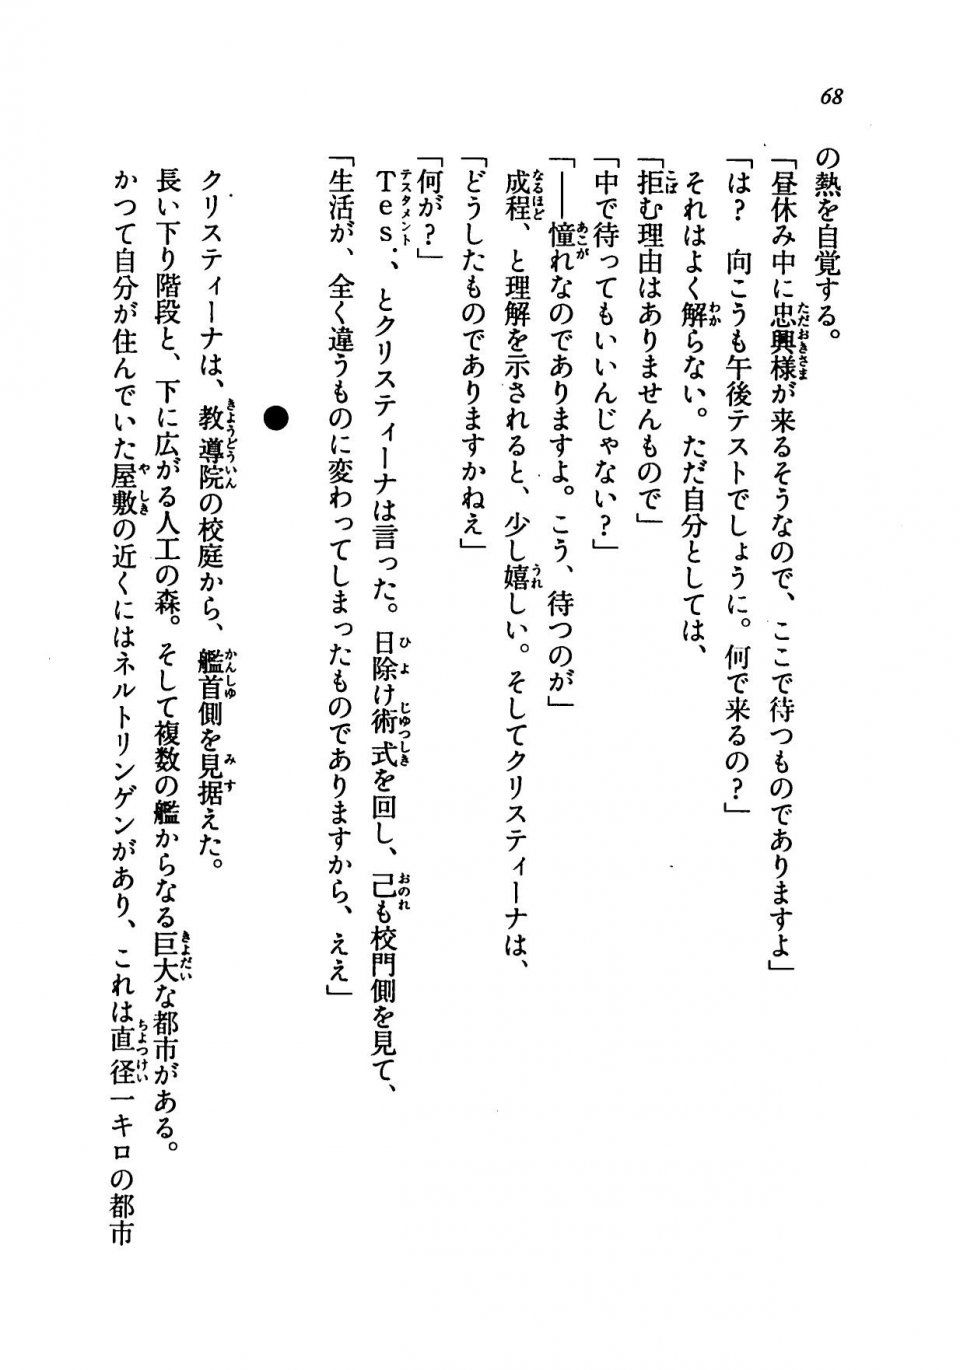 Kyoukai Senjou no Horizon LN Vol 19(8A) - Photo #68